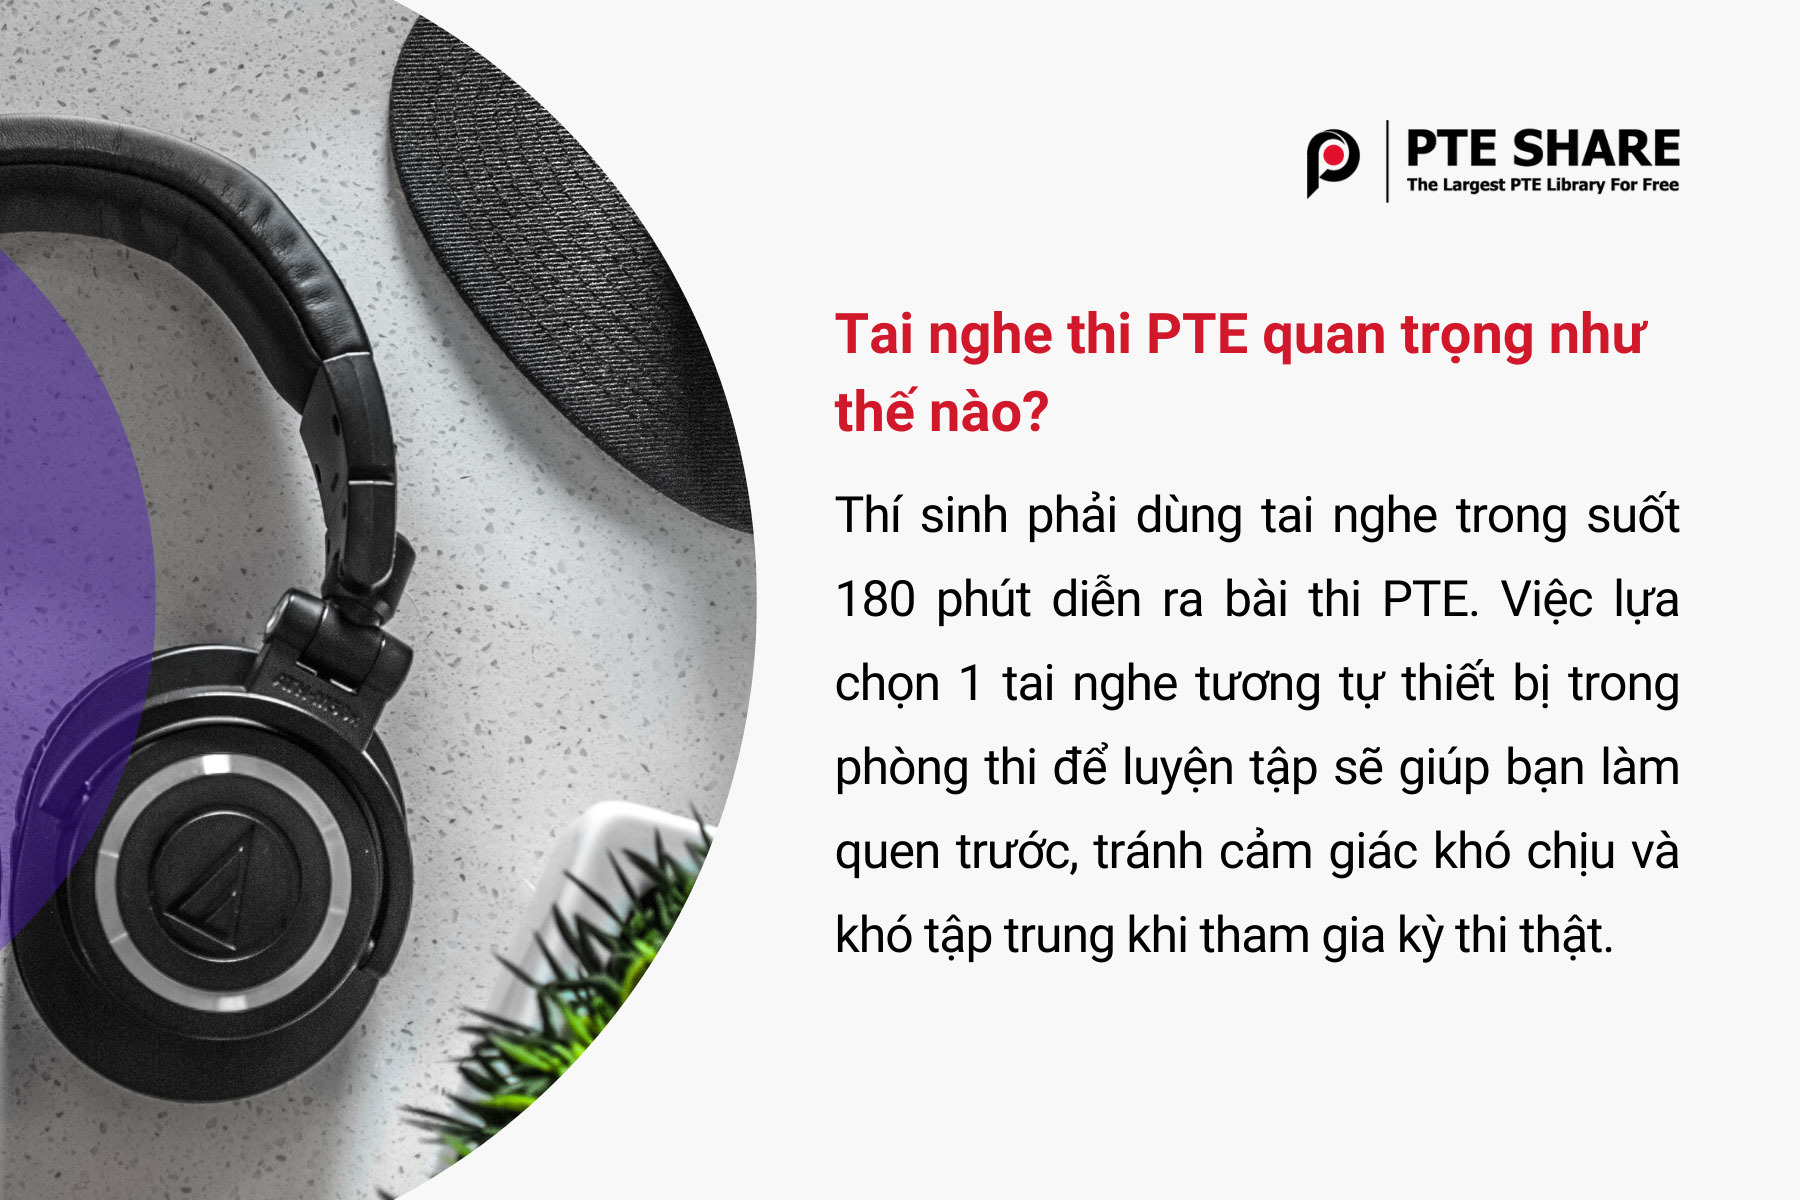 Tai nghe thi PTE quan trọng như thế nào?